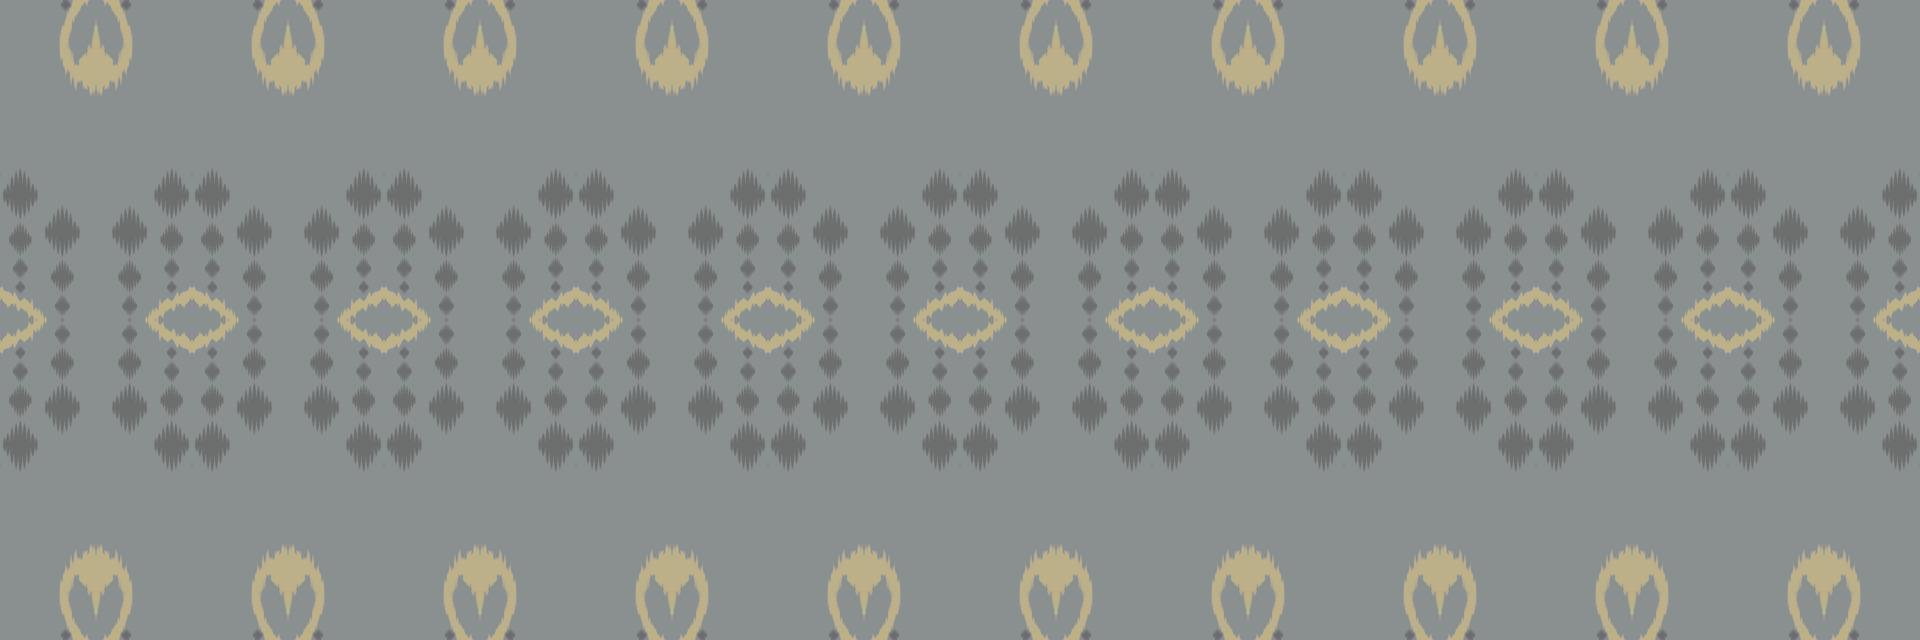 ikat nahtlose stammeshintergründe nahtloses muster. ethnische geometrische ikkat batik digitaler vektor textildesign für drucke stoff saree mughal pinsel symbol schwaden textur kurti kurtis kurtas